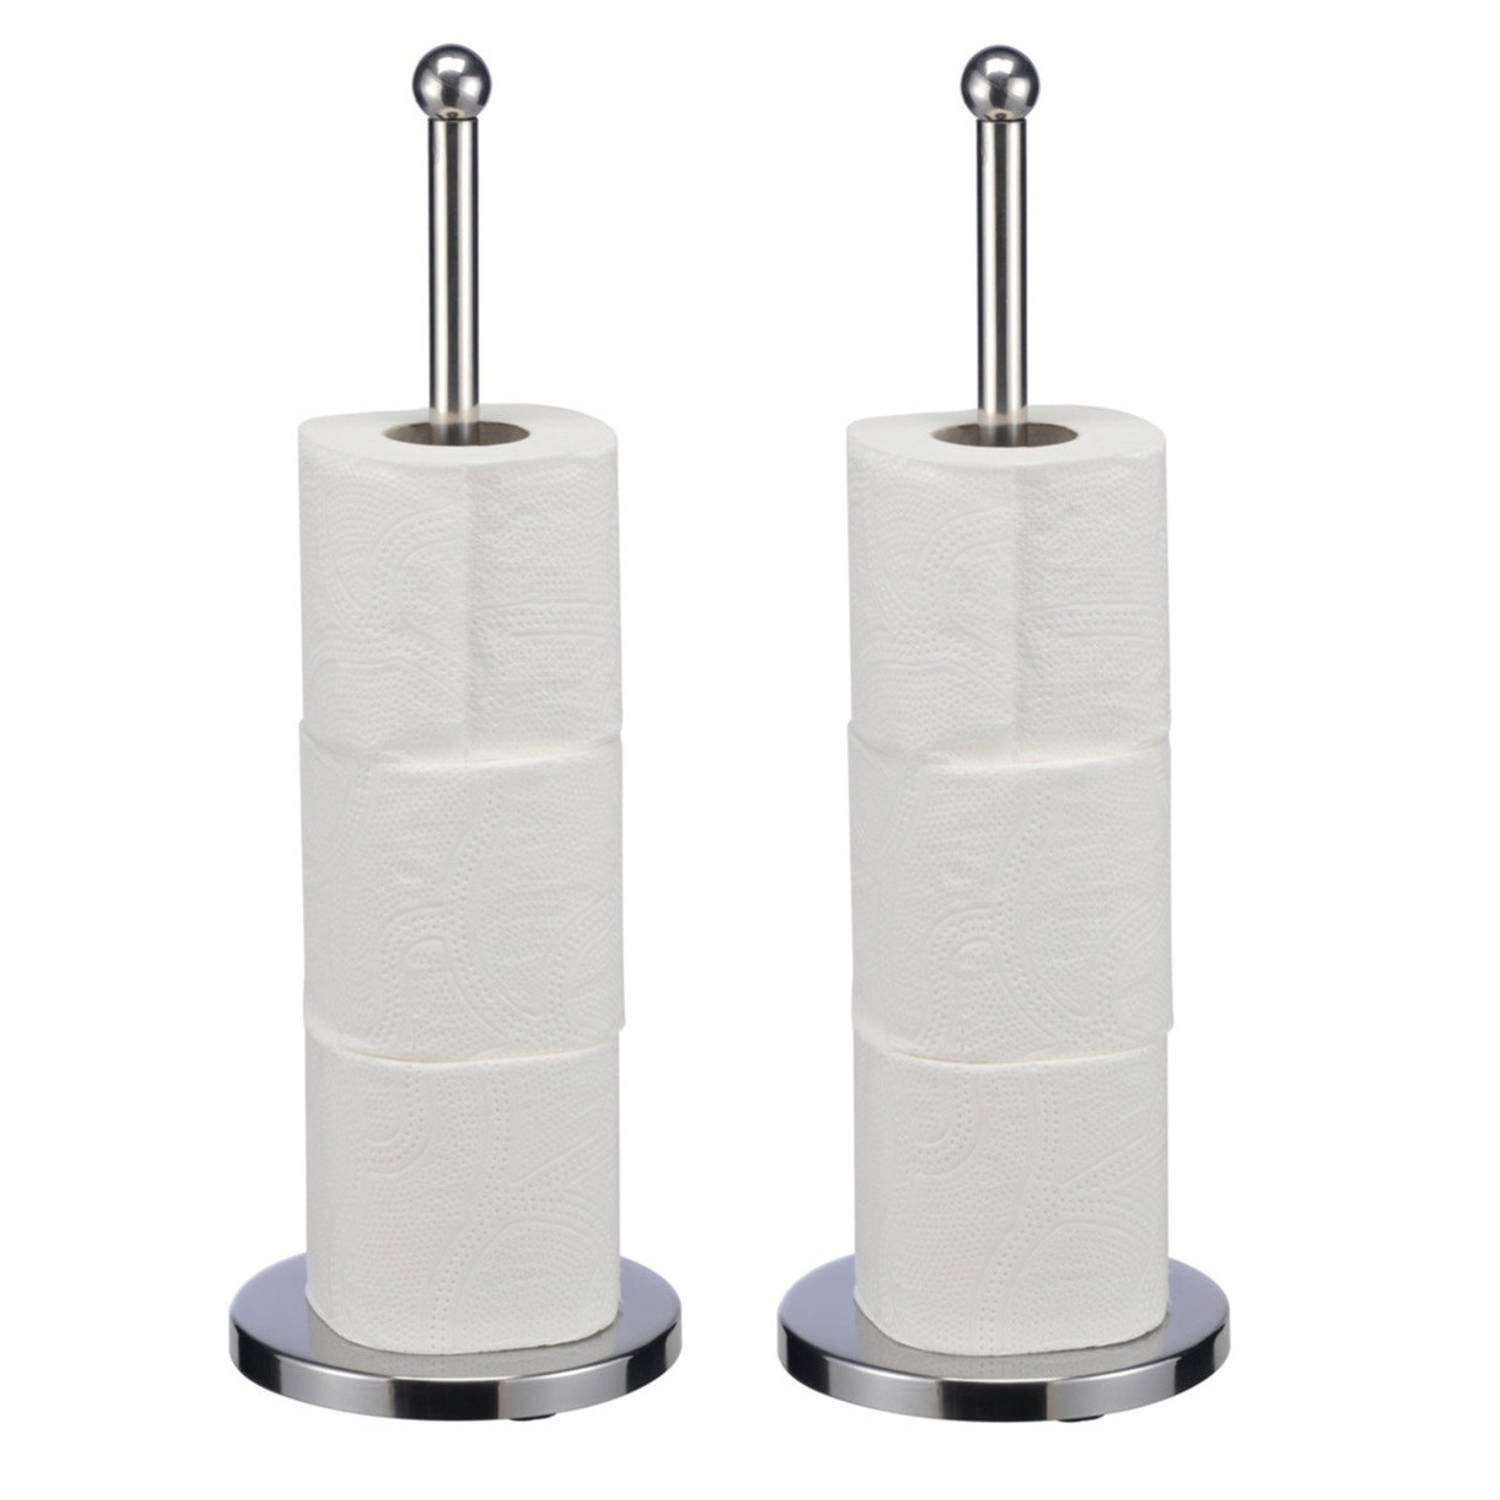 2x Rvs Wc-toiletrol Houders 42 Cm Badkamer-toilet Benodigdheden Toiletpapier-wcpapier Houders